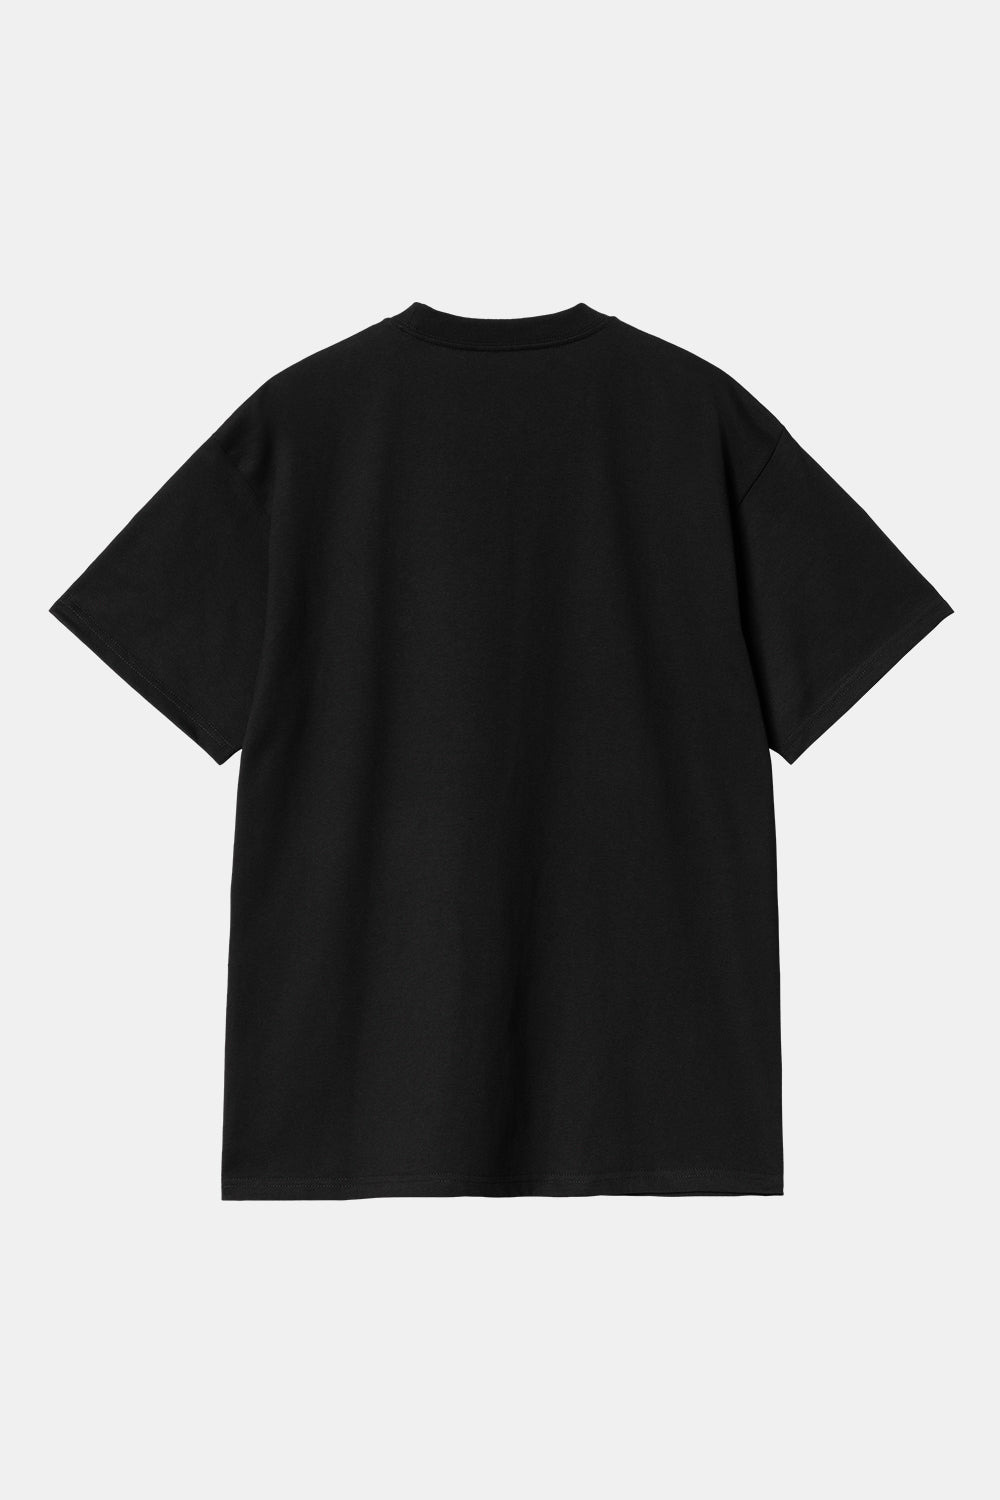 Carhartt WIP kortærmet T-shirt med ikoner (sort/hvid)